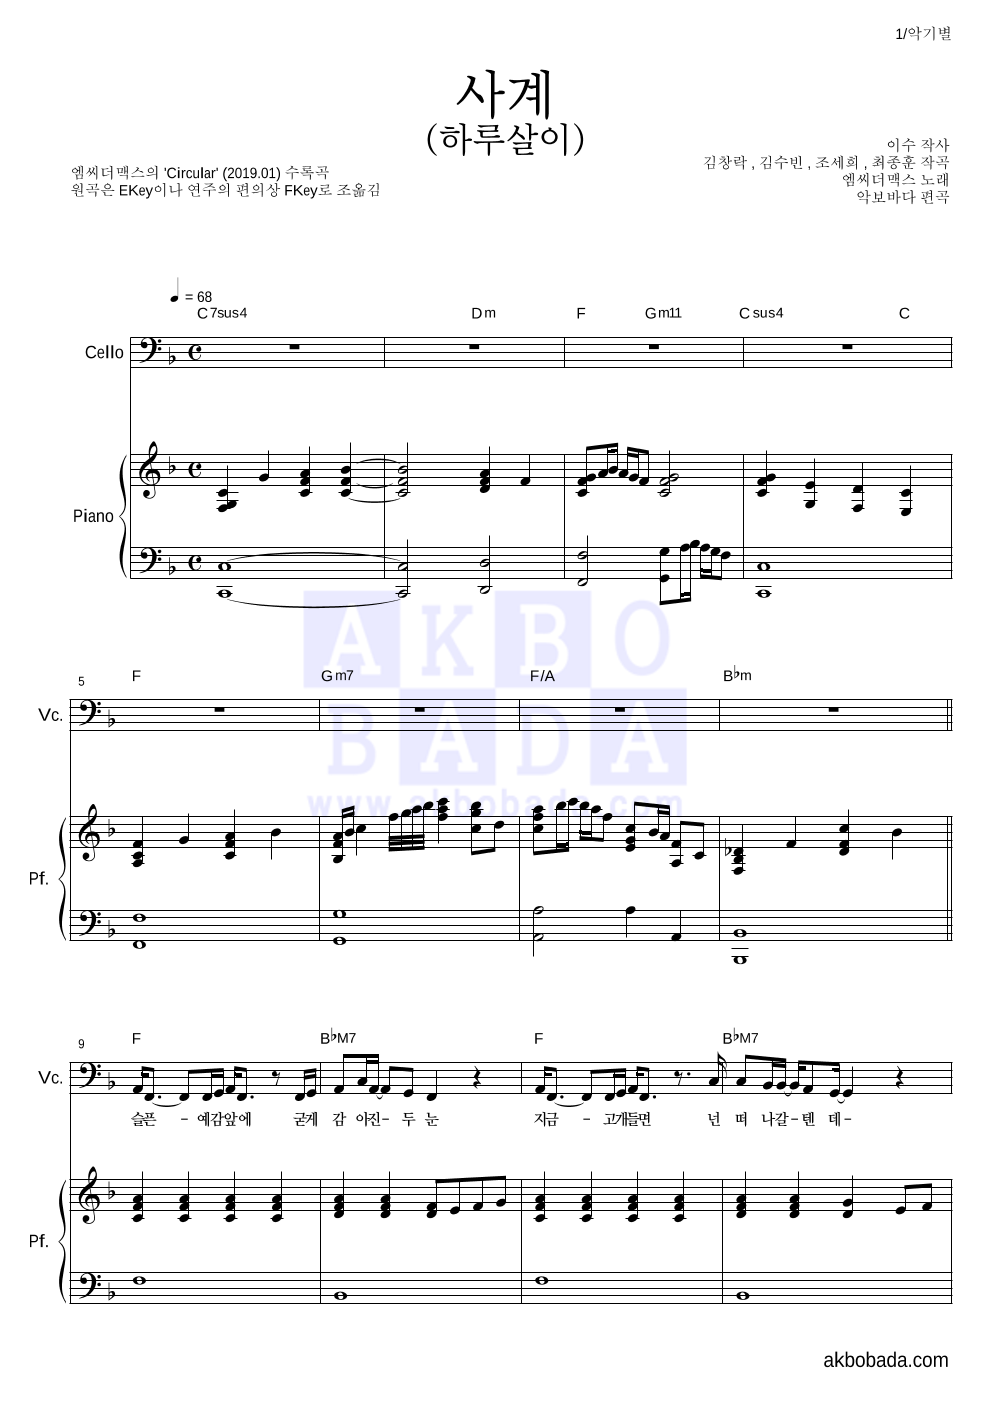 엠씨더맥스 - 사계(하루살이) 첼로&피아노 악보 